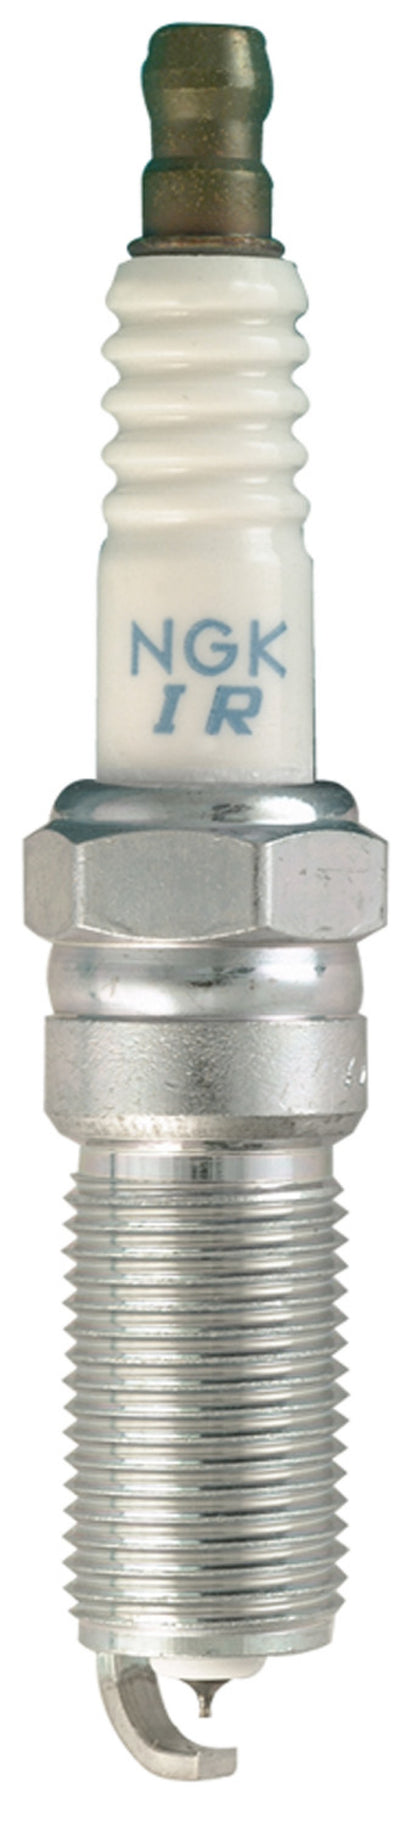 NGK Laser Iridium/Platinum Spark Plug Box of 4 (LTR5BI-13)